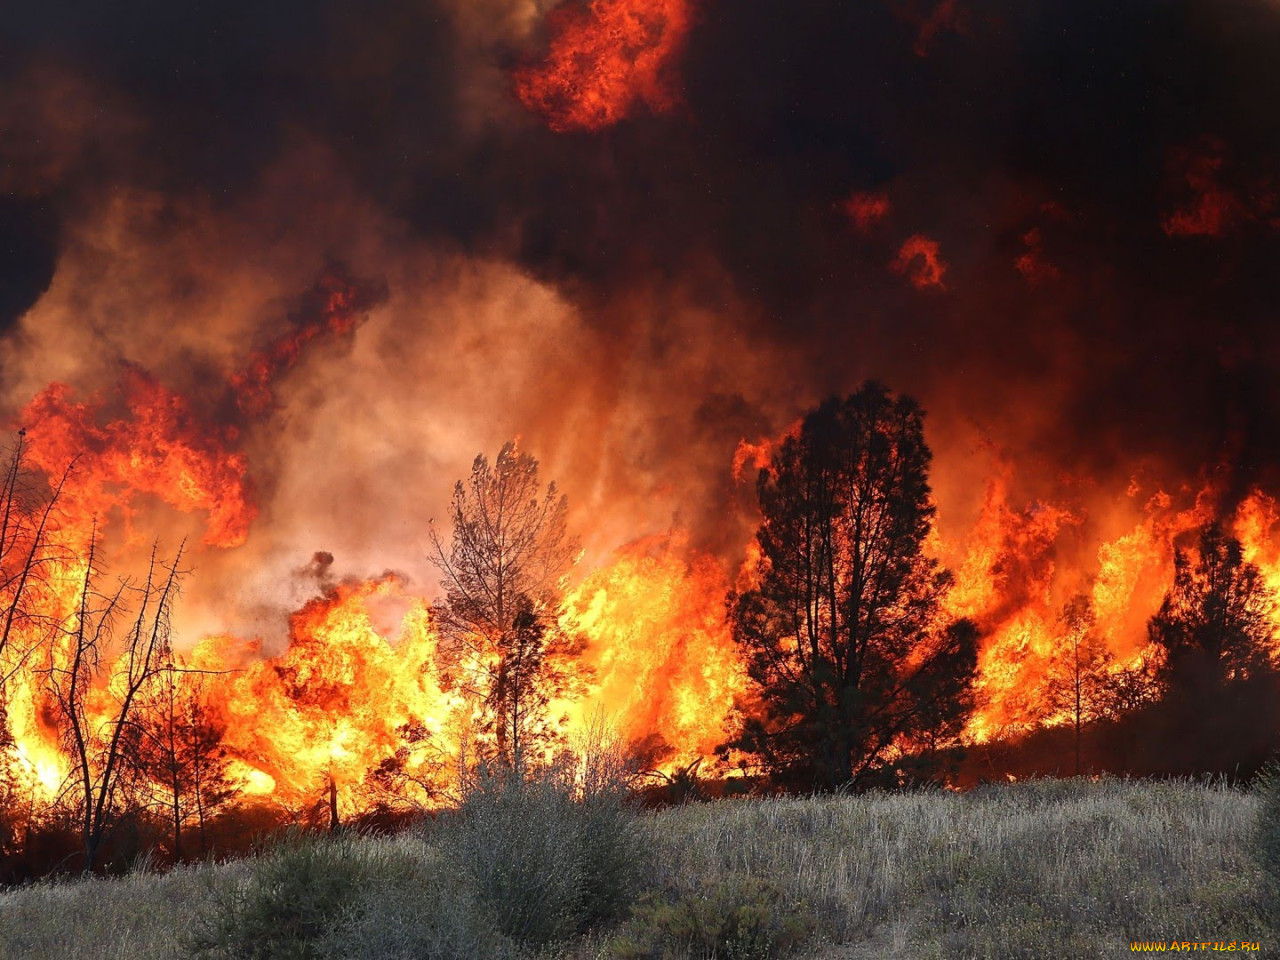 Лесные пожары видео. Лесные пожары. Лес в огне. Горящий лес. Экология пожары.